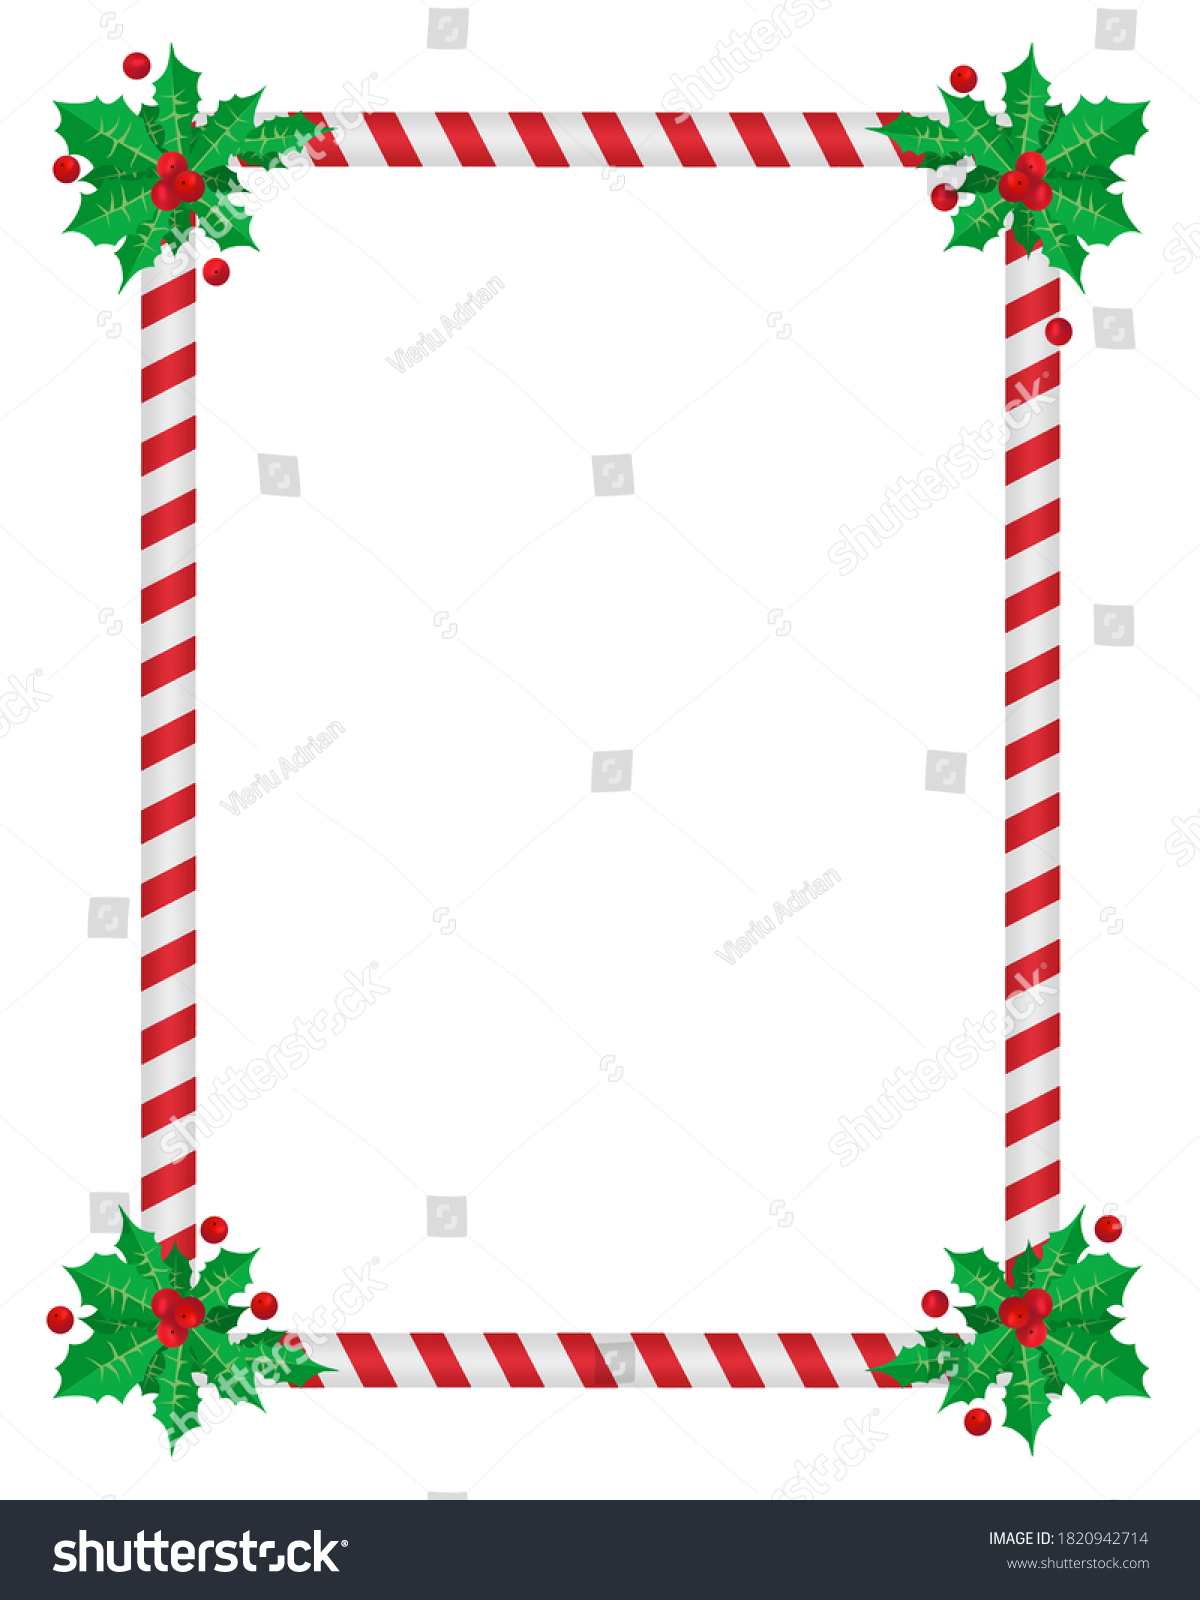 Christmas Border Holly Season December Frame Stock Illustration 1820942714